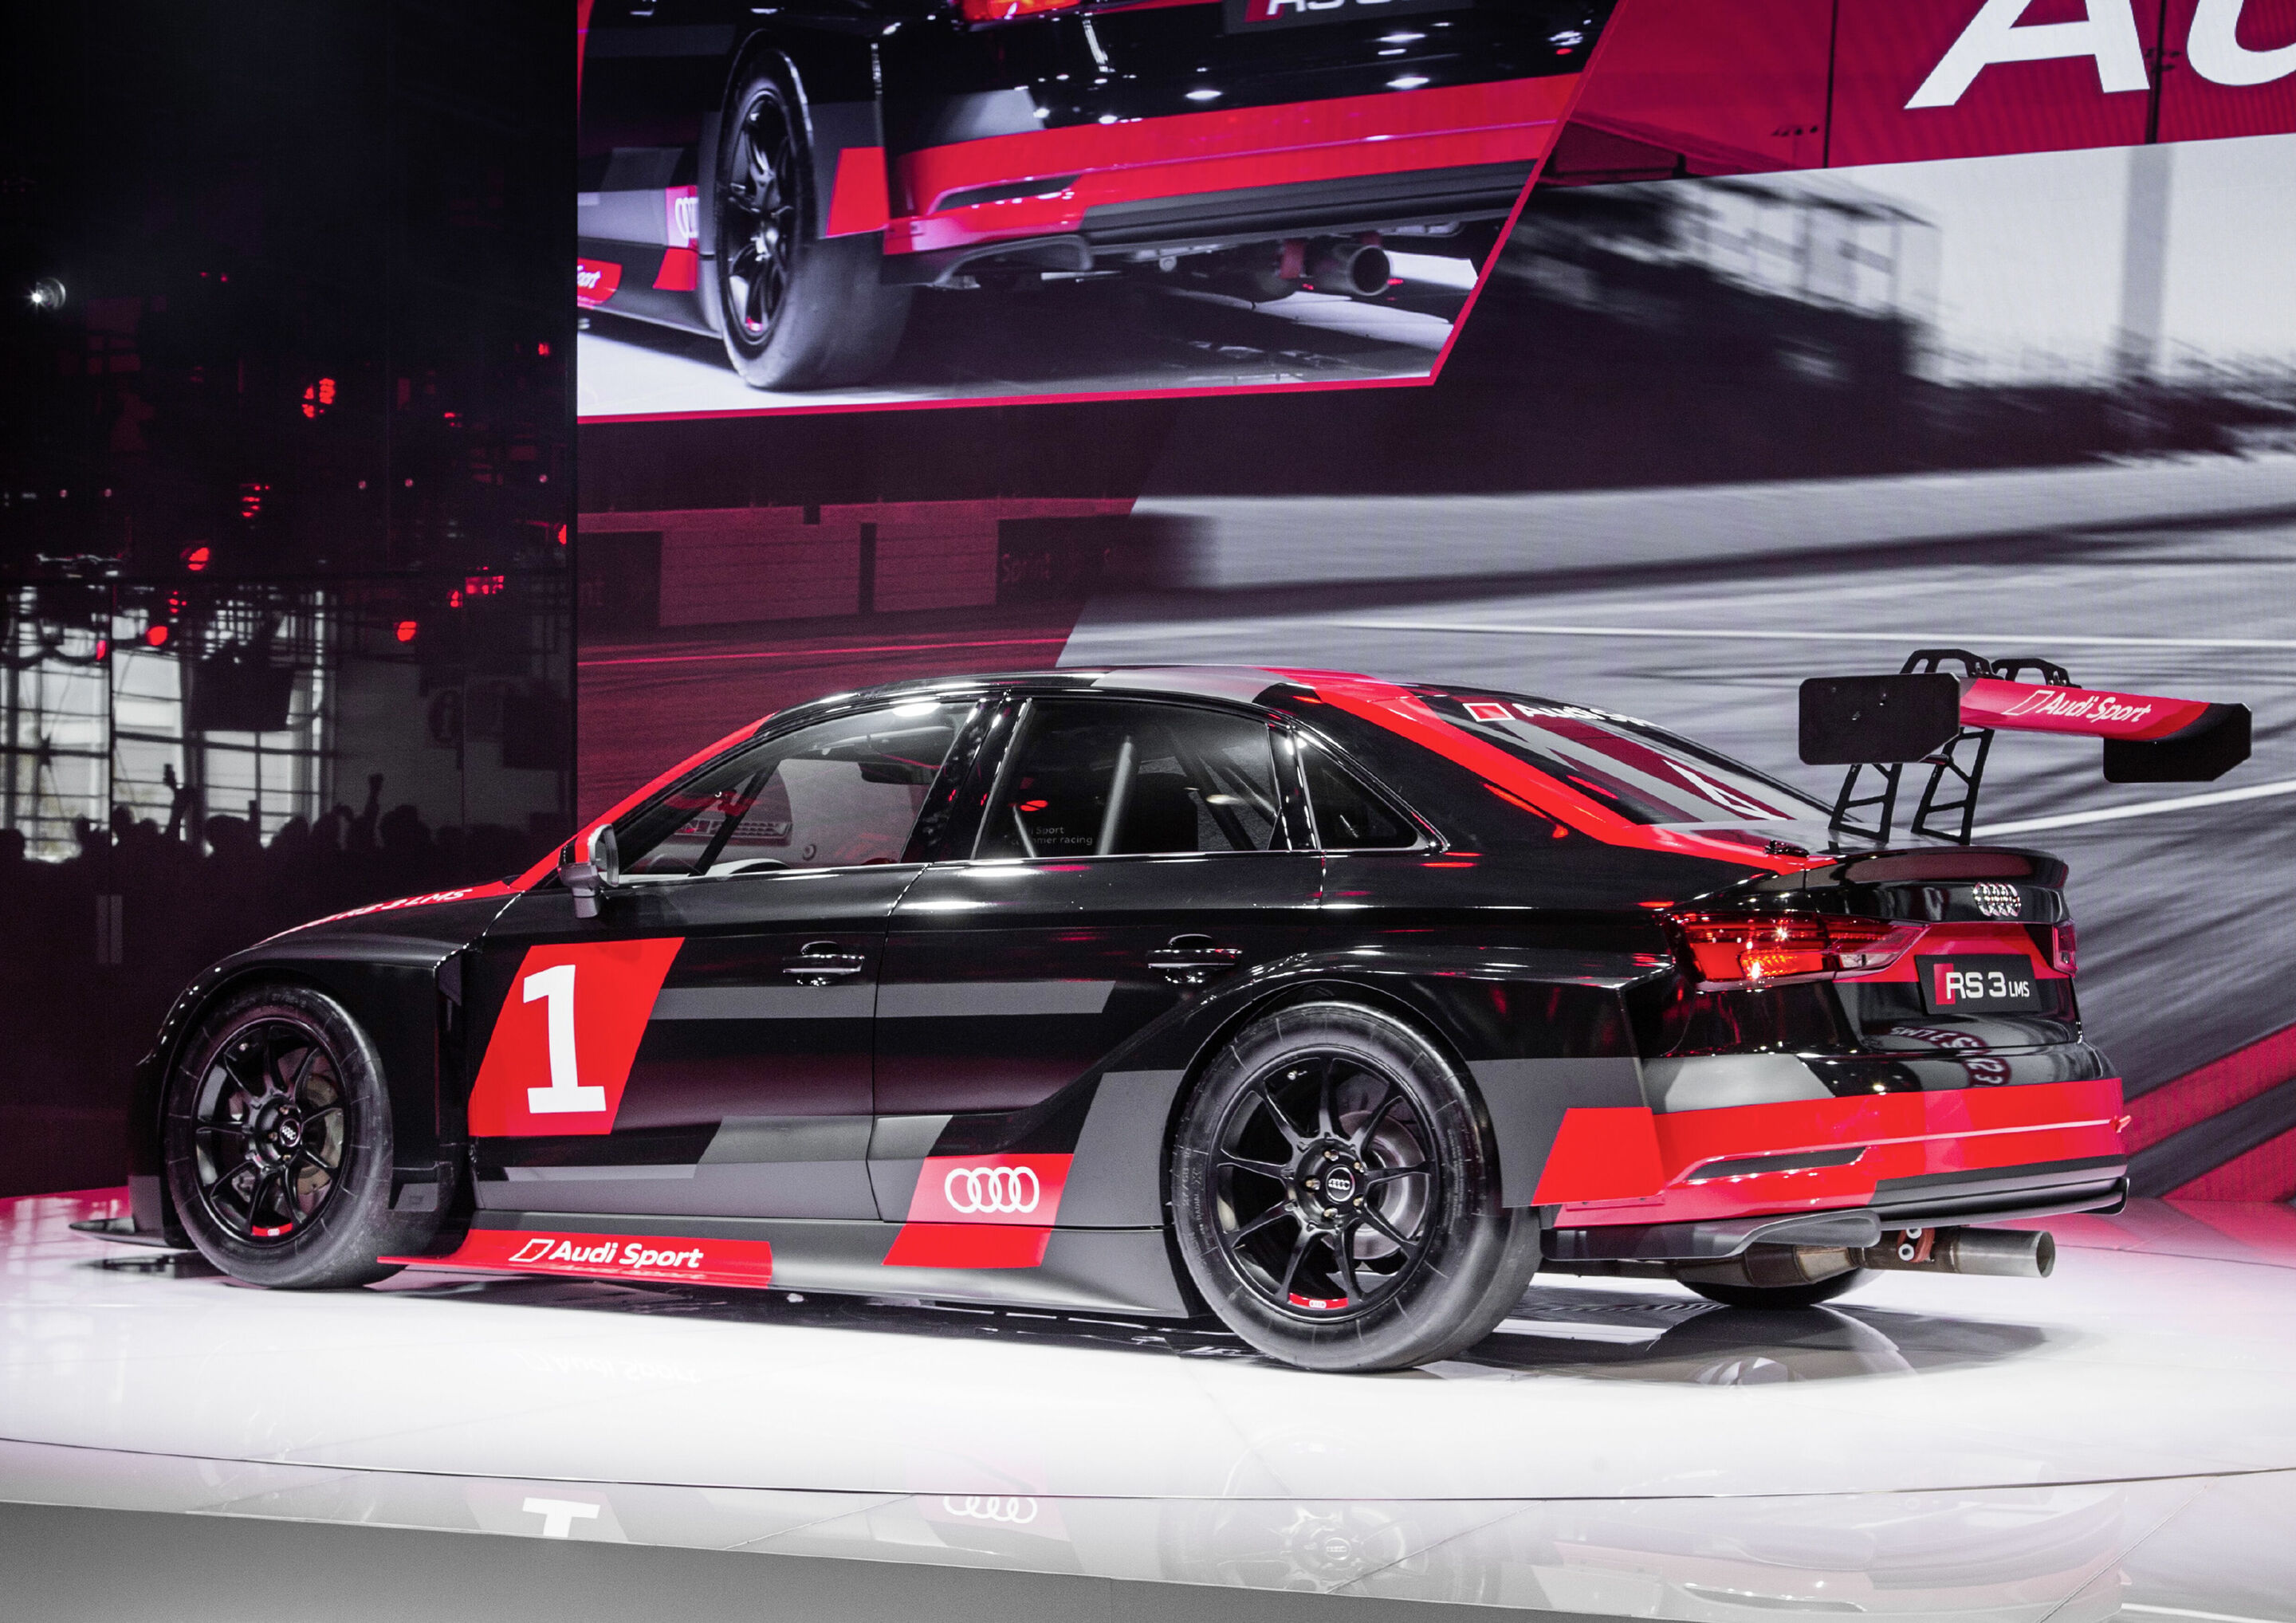 The new Audi RS 3 LMS, Paris Motor Show 2016